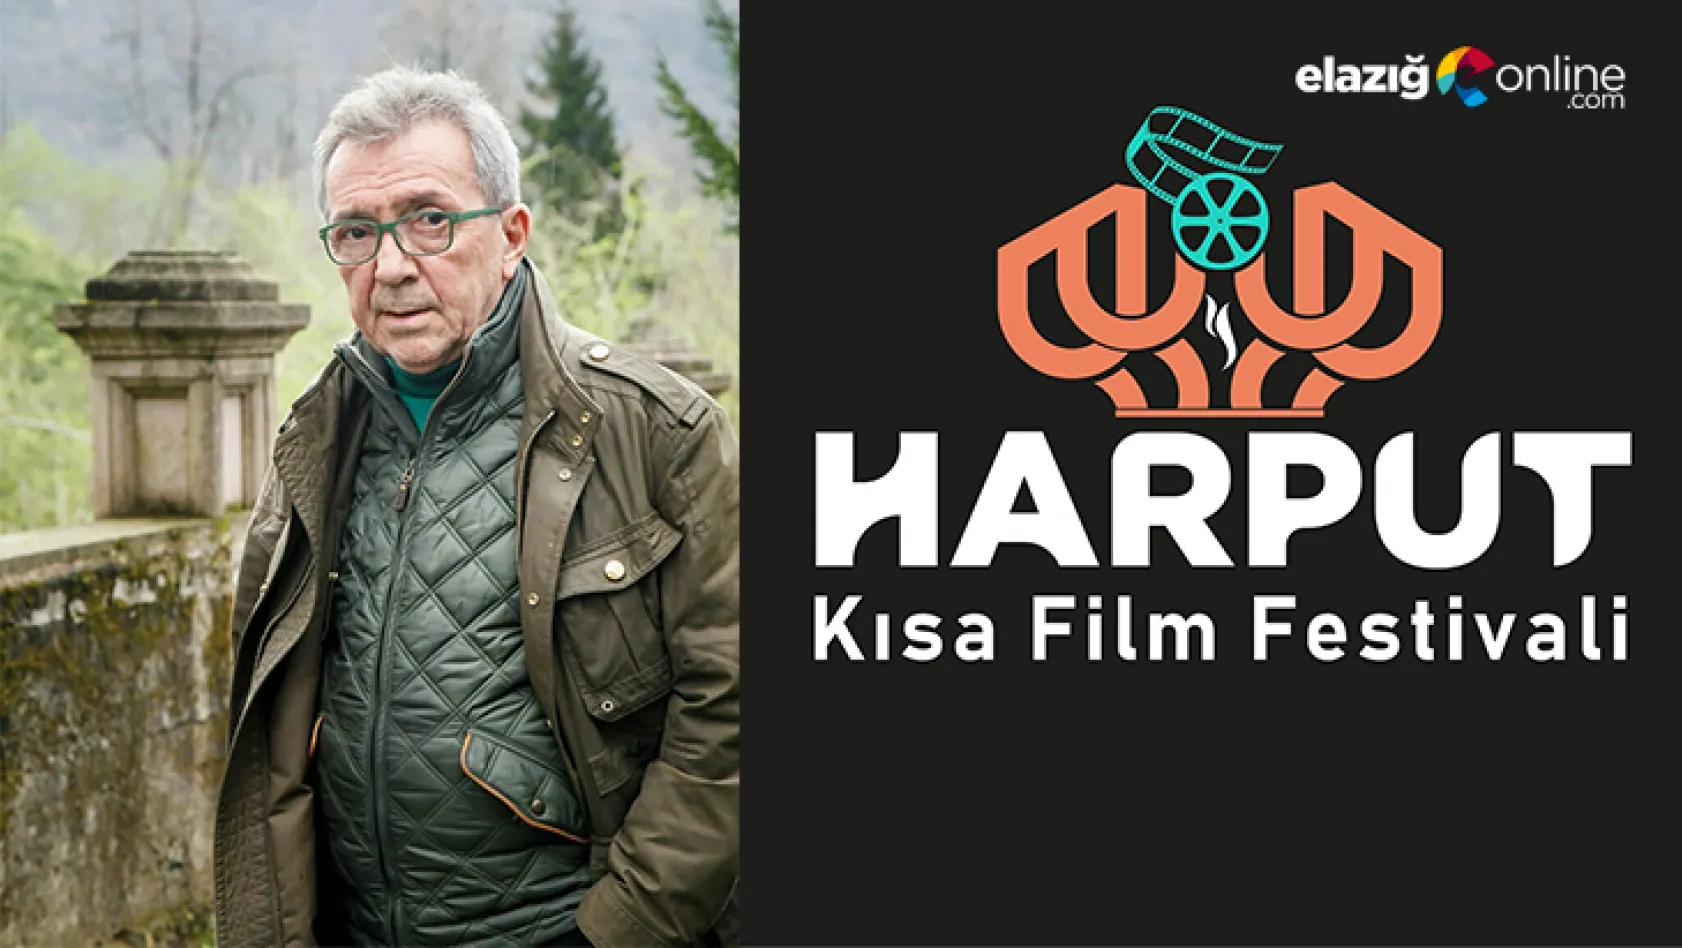 Elazığ'da 'Harput Kısa Film Festivali' gerçekleştirilecek